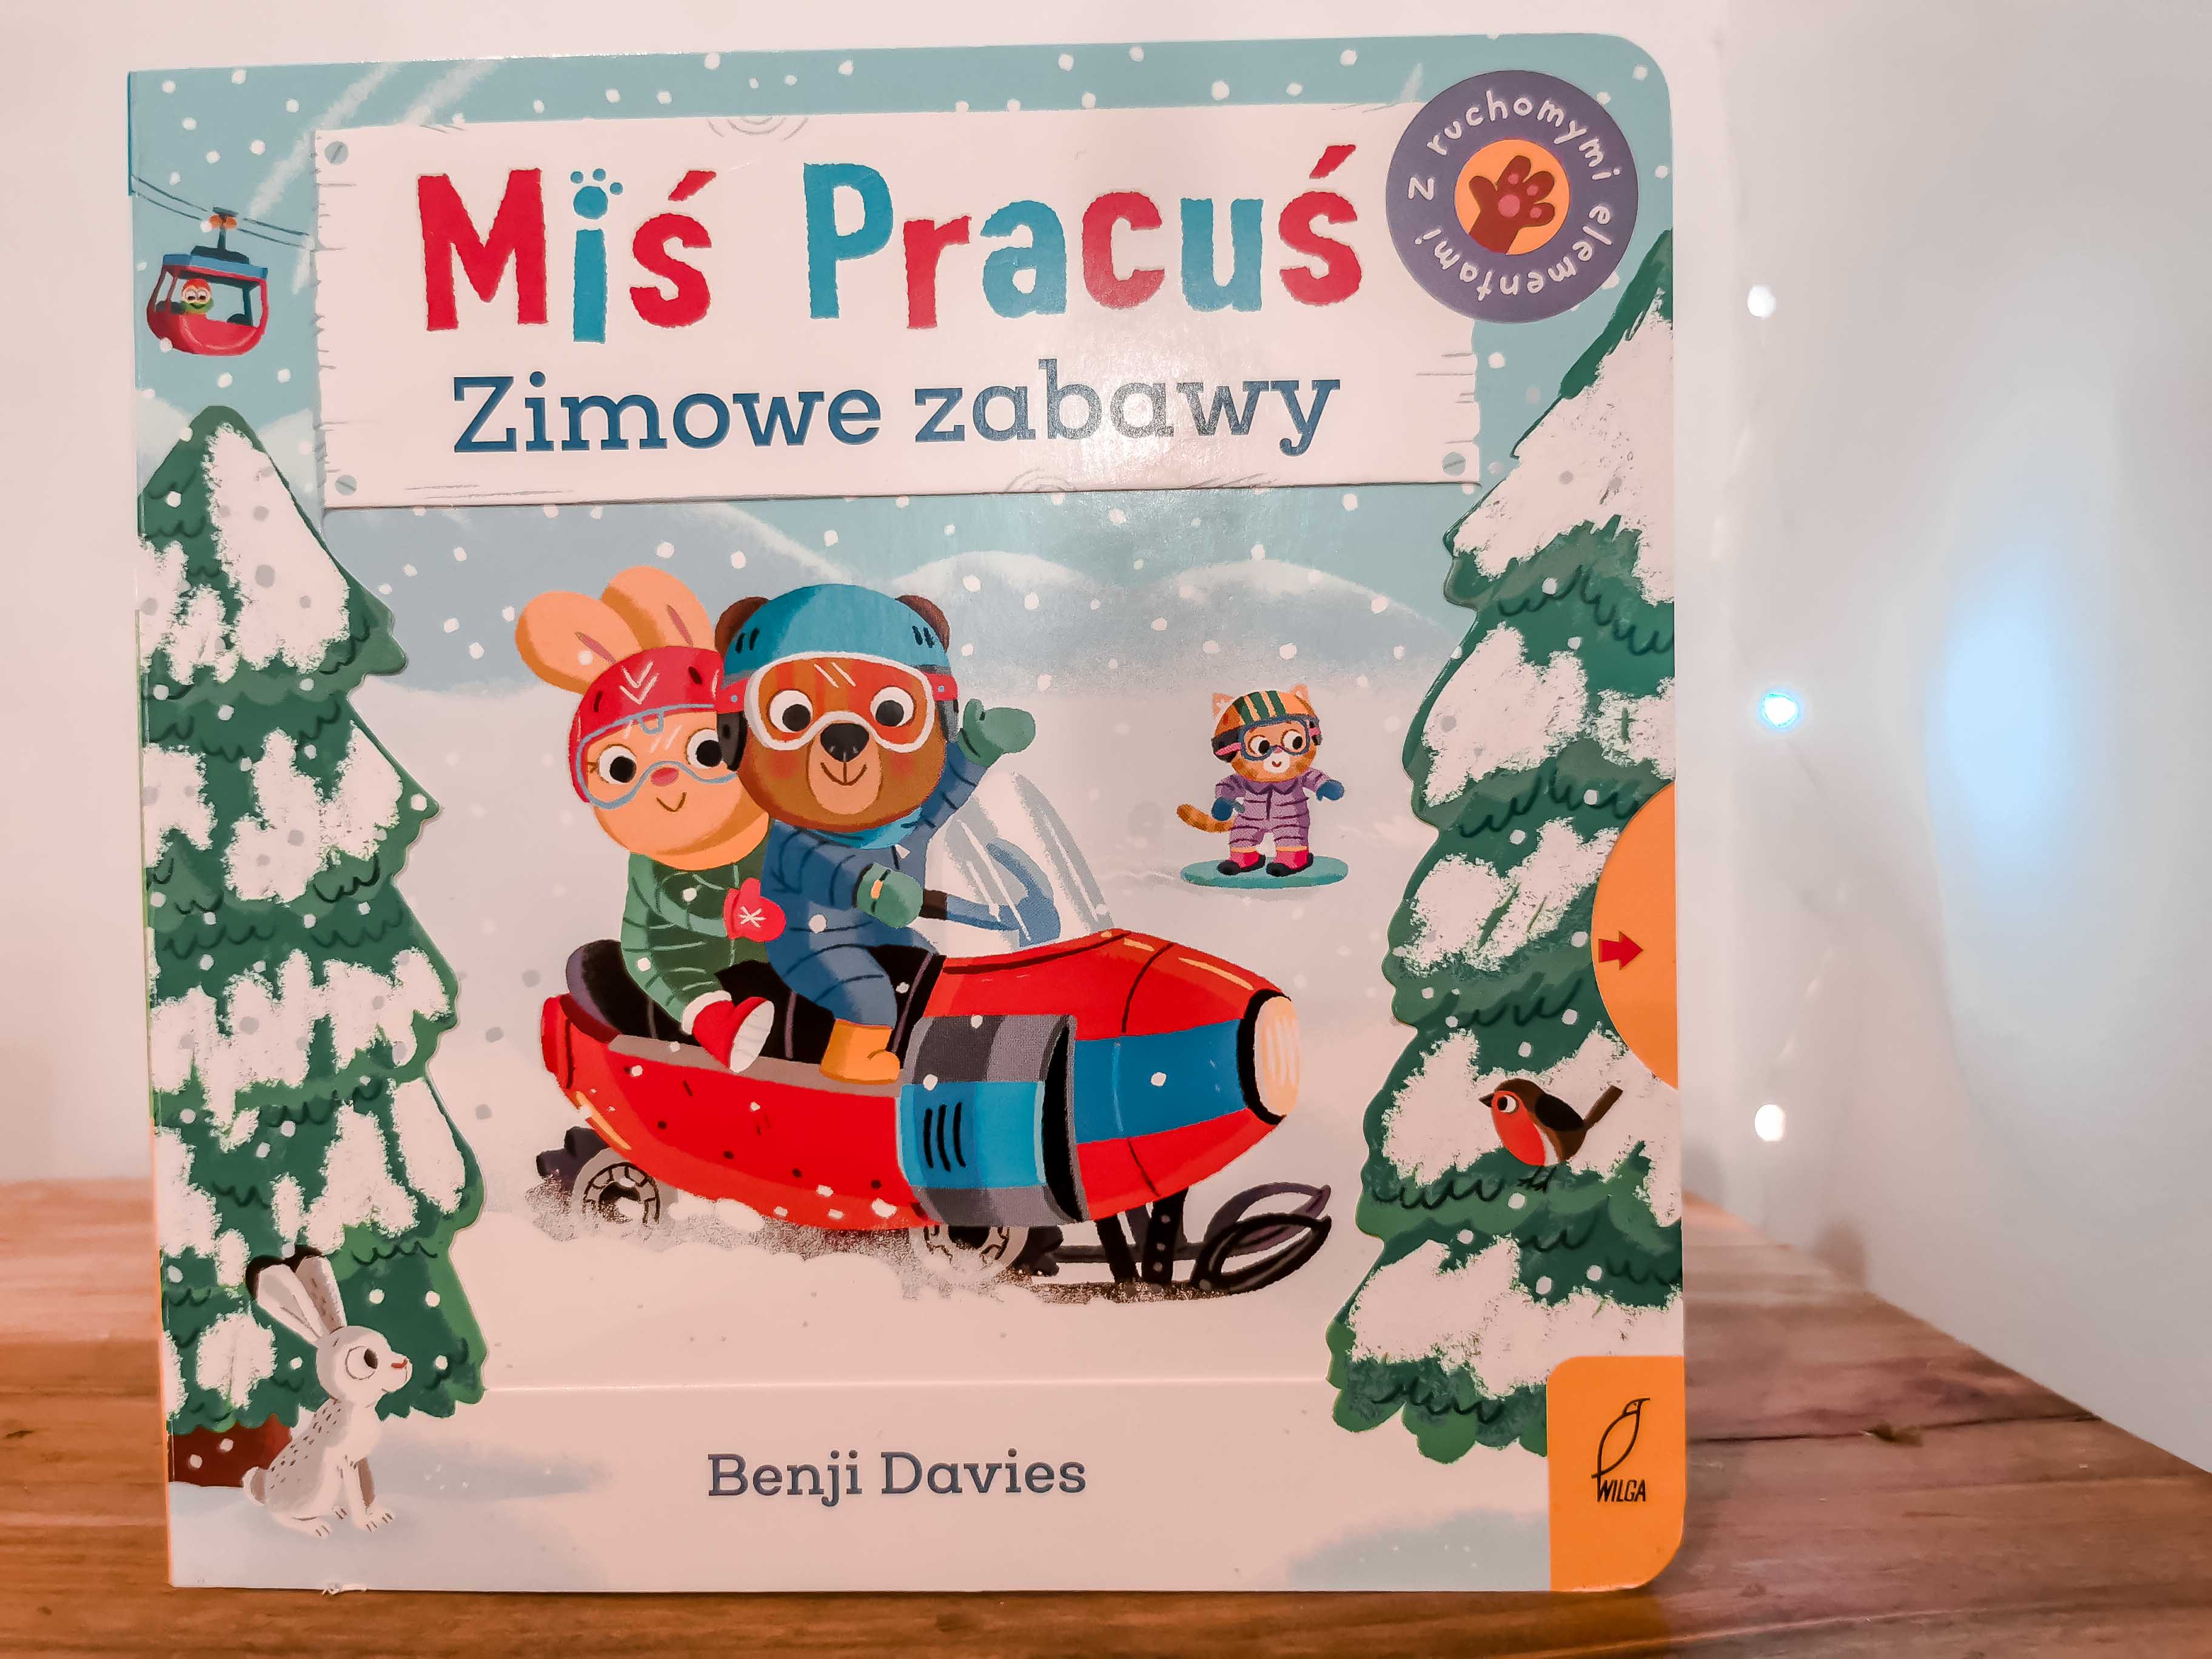 Miś pracuś - zimowe zabawy - najlepsze ksiązki dla rocznego dziecka sztywne kartki ruchome elementy